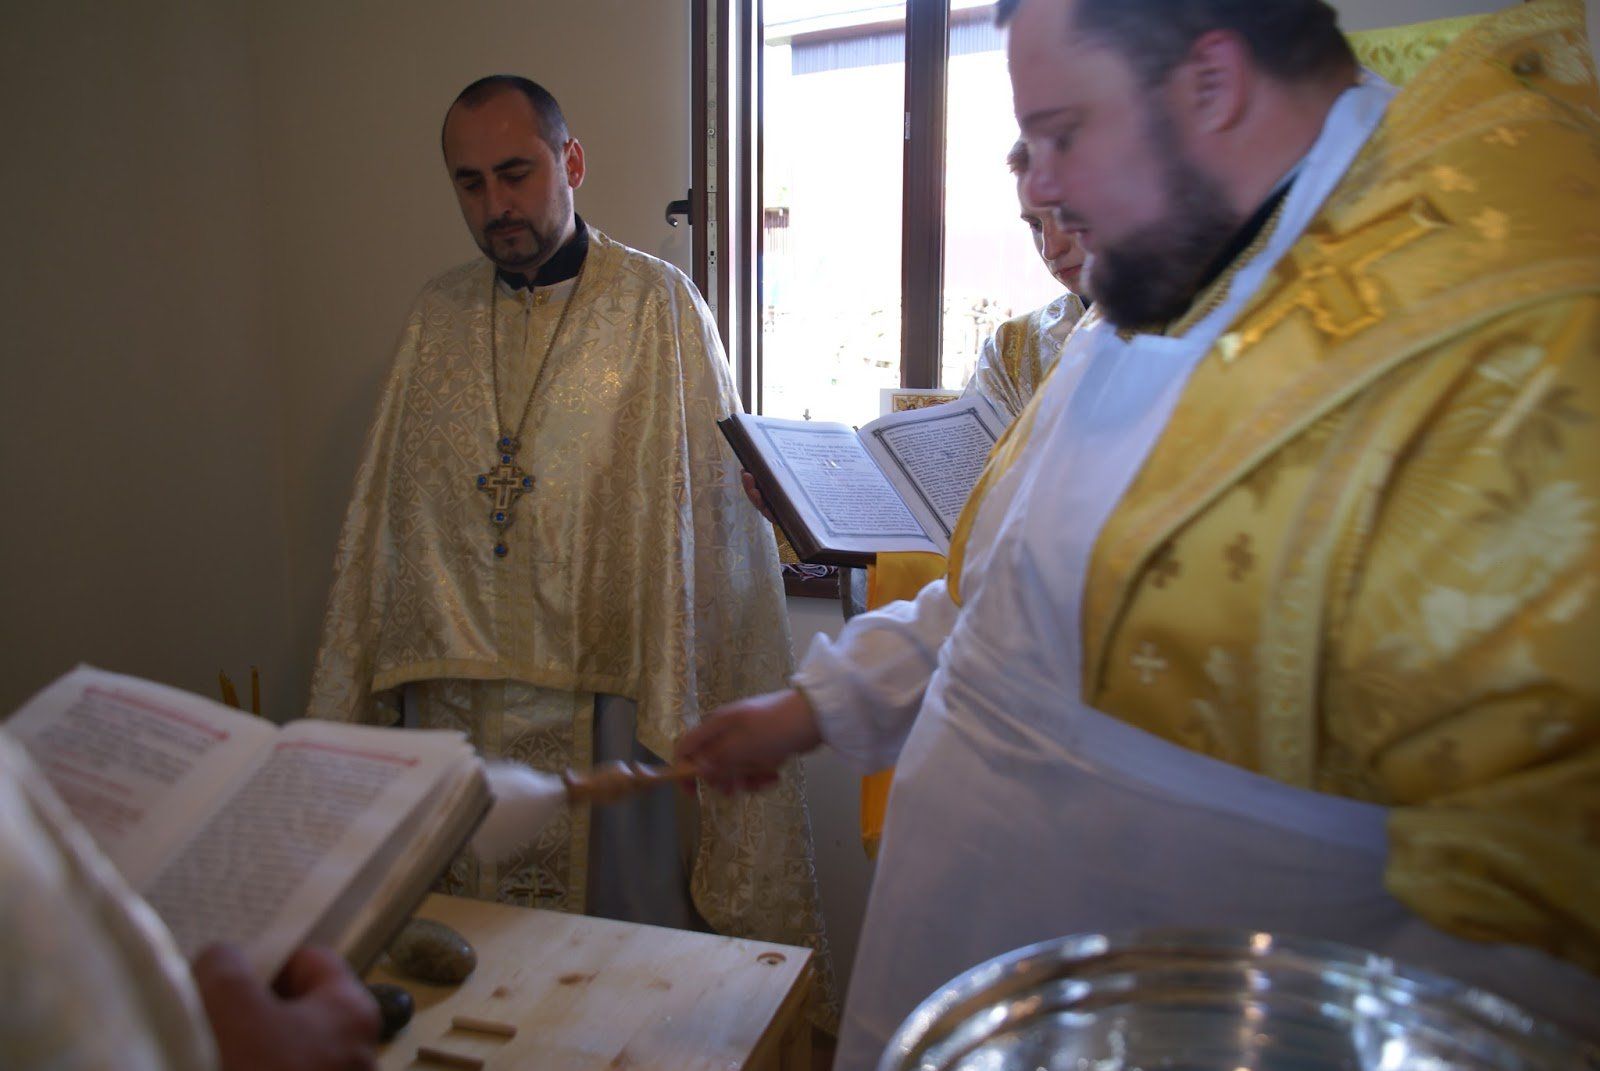 Єпископ Варсонофій освятив новозбудований храм УПЦ КП на Закарпатті